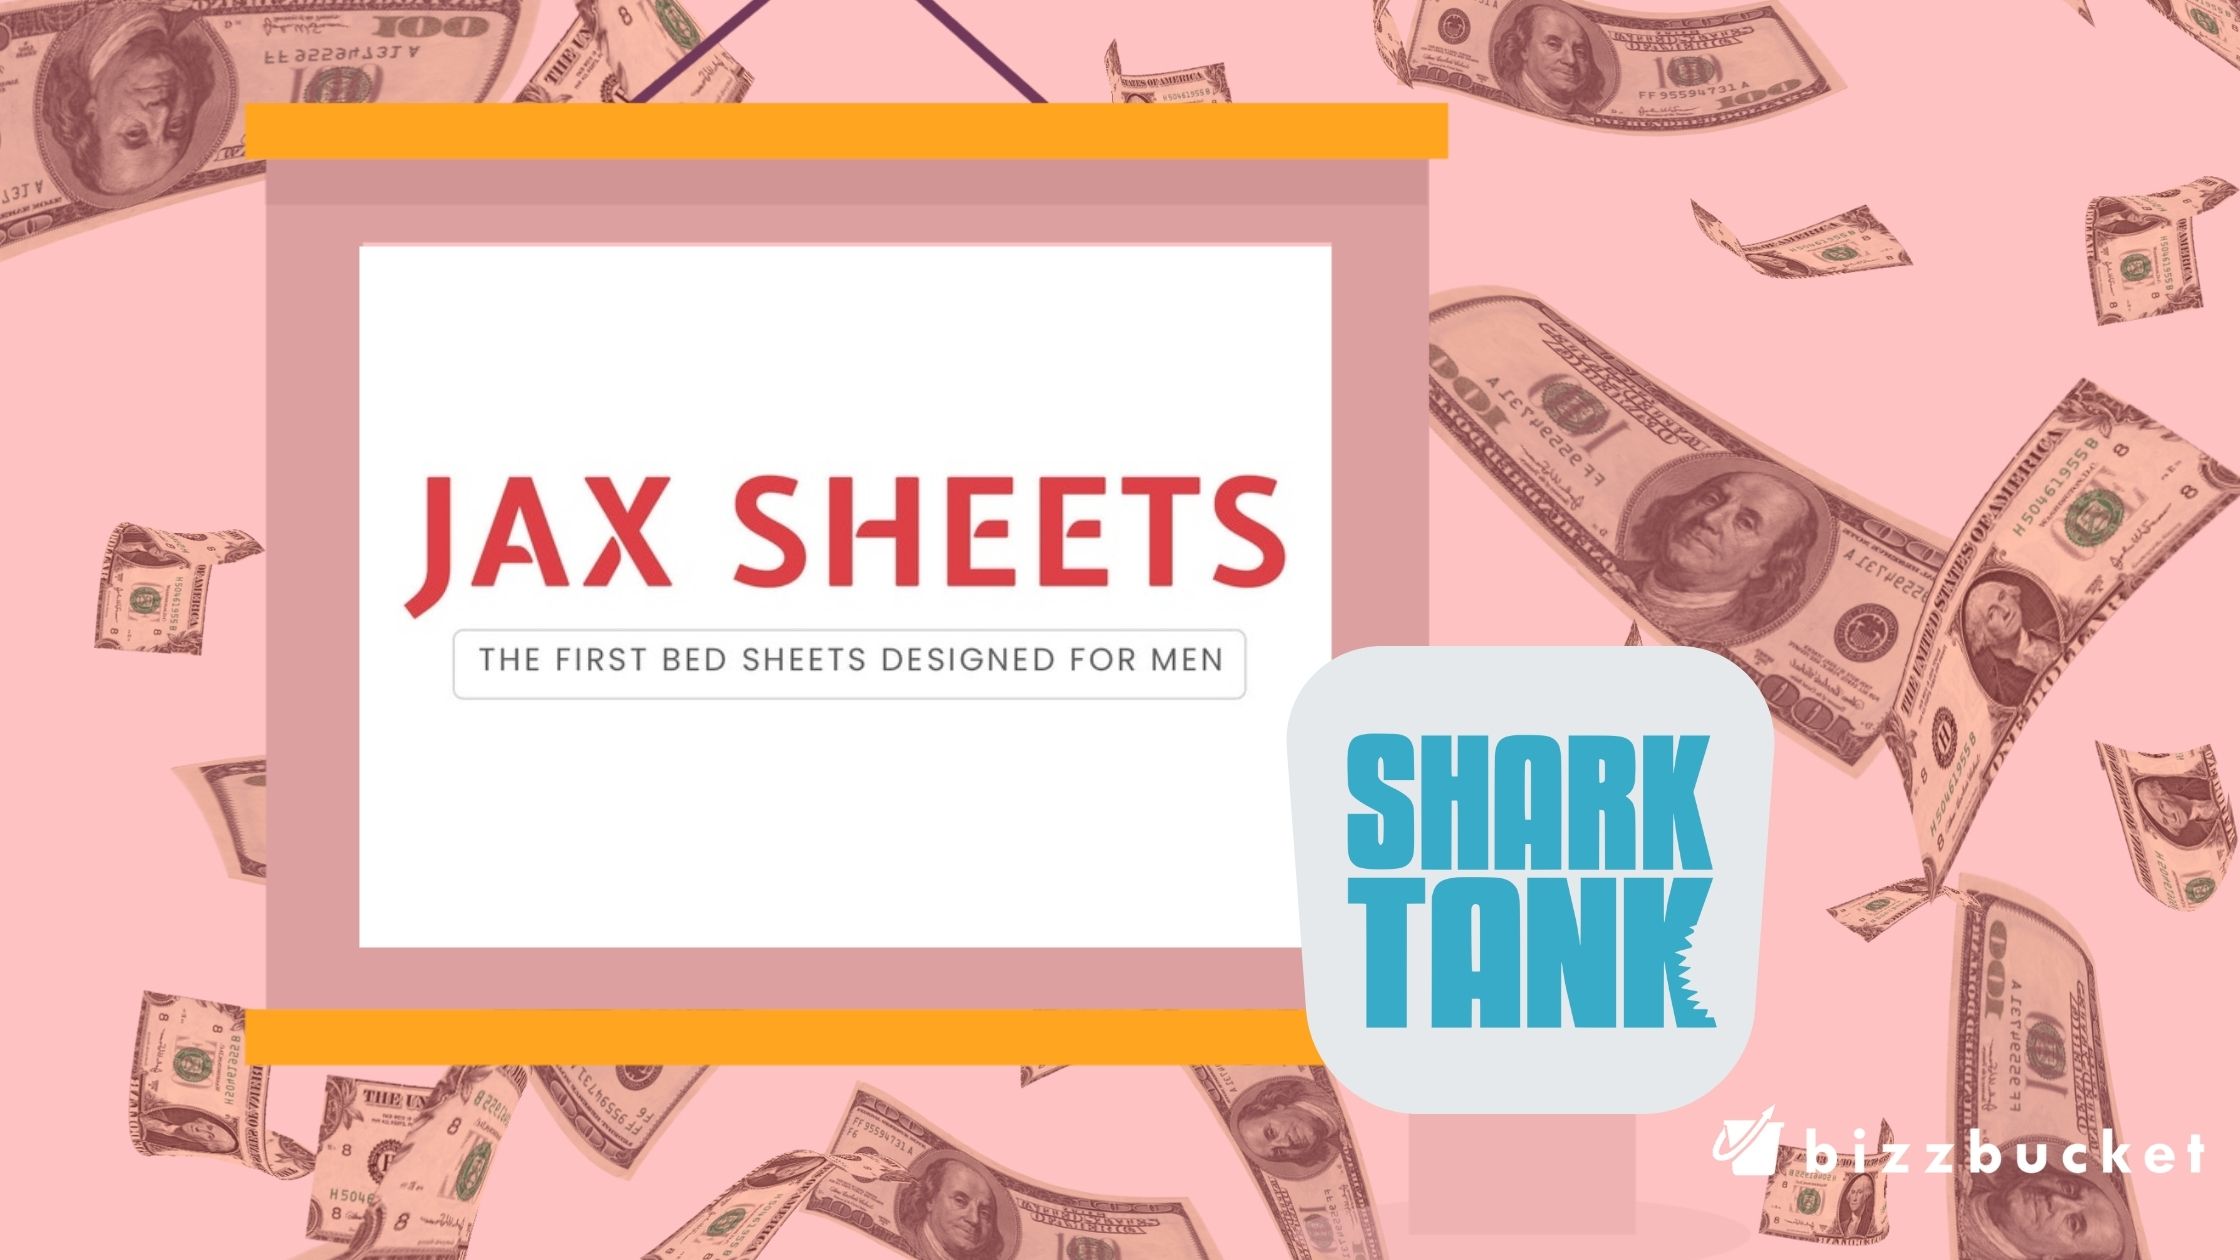 jax sheets shark tank update